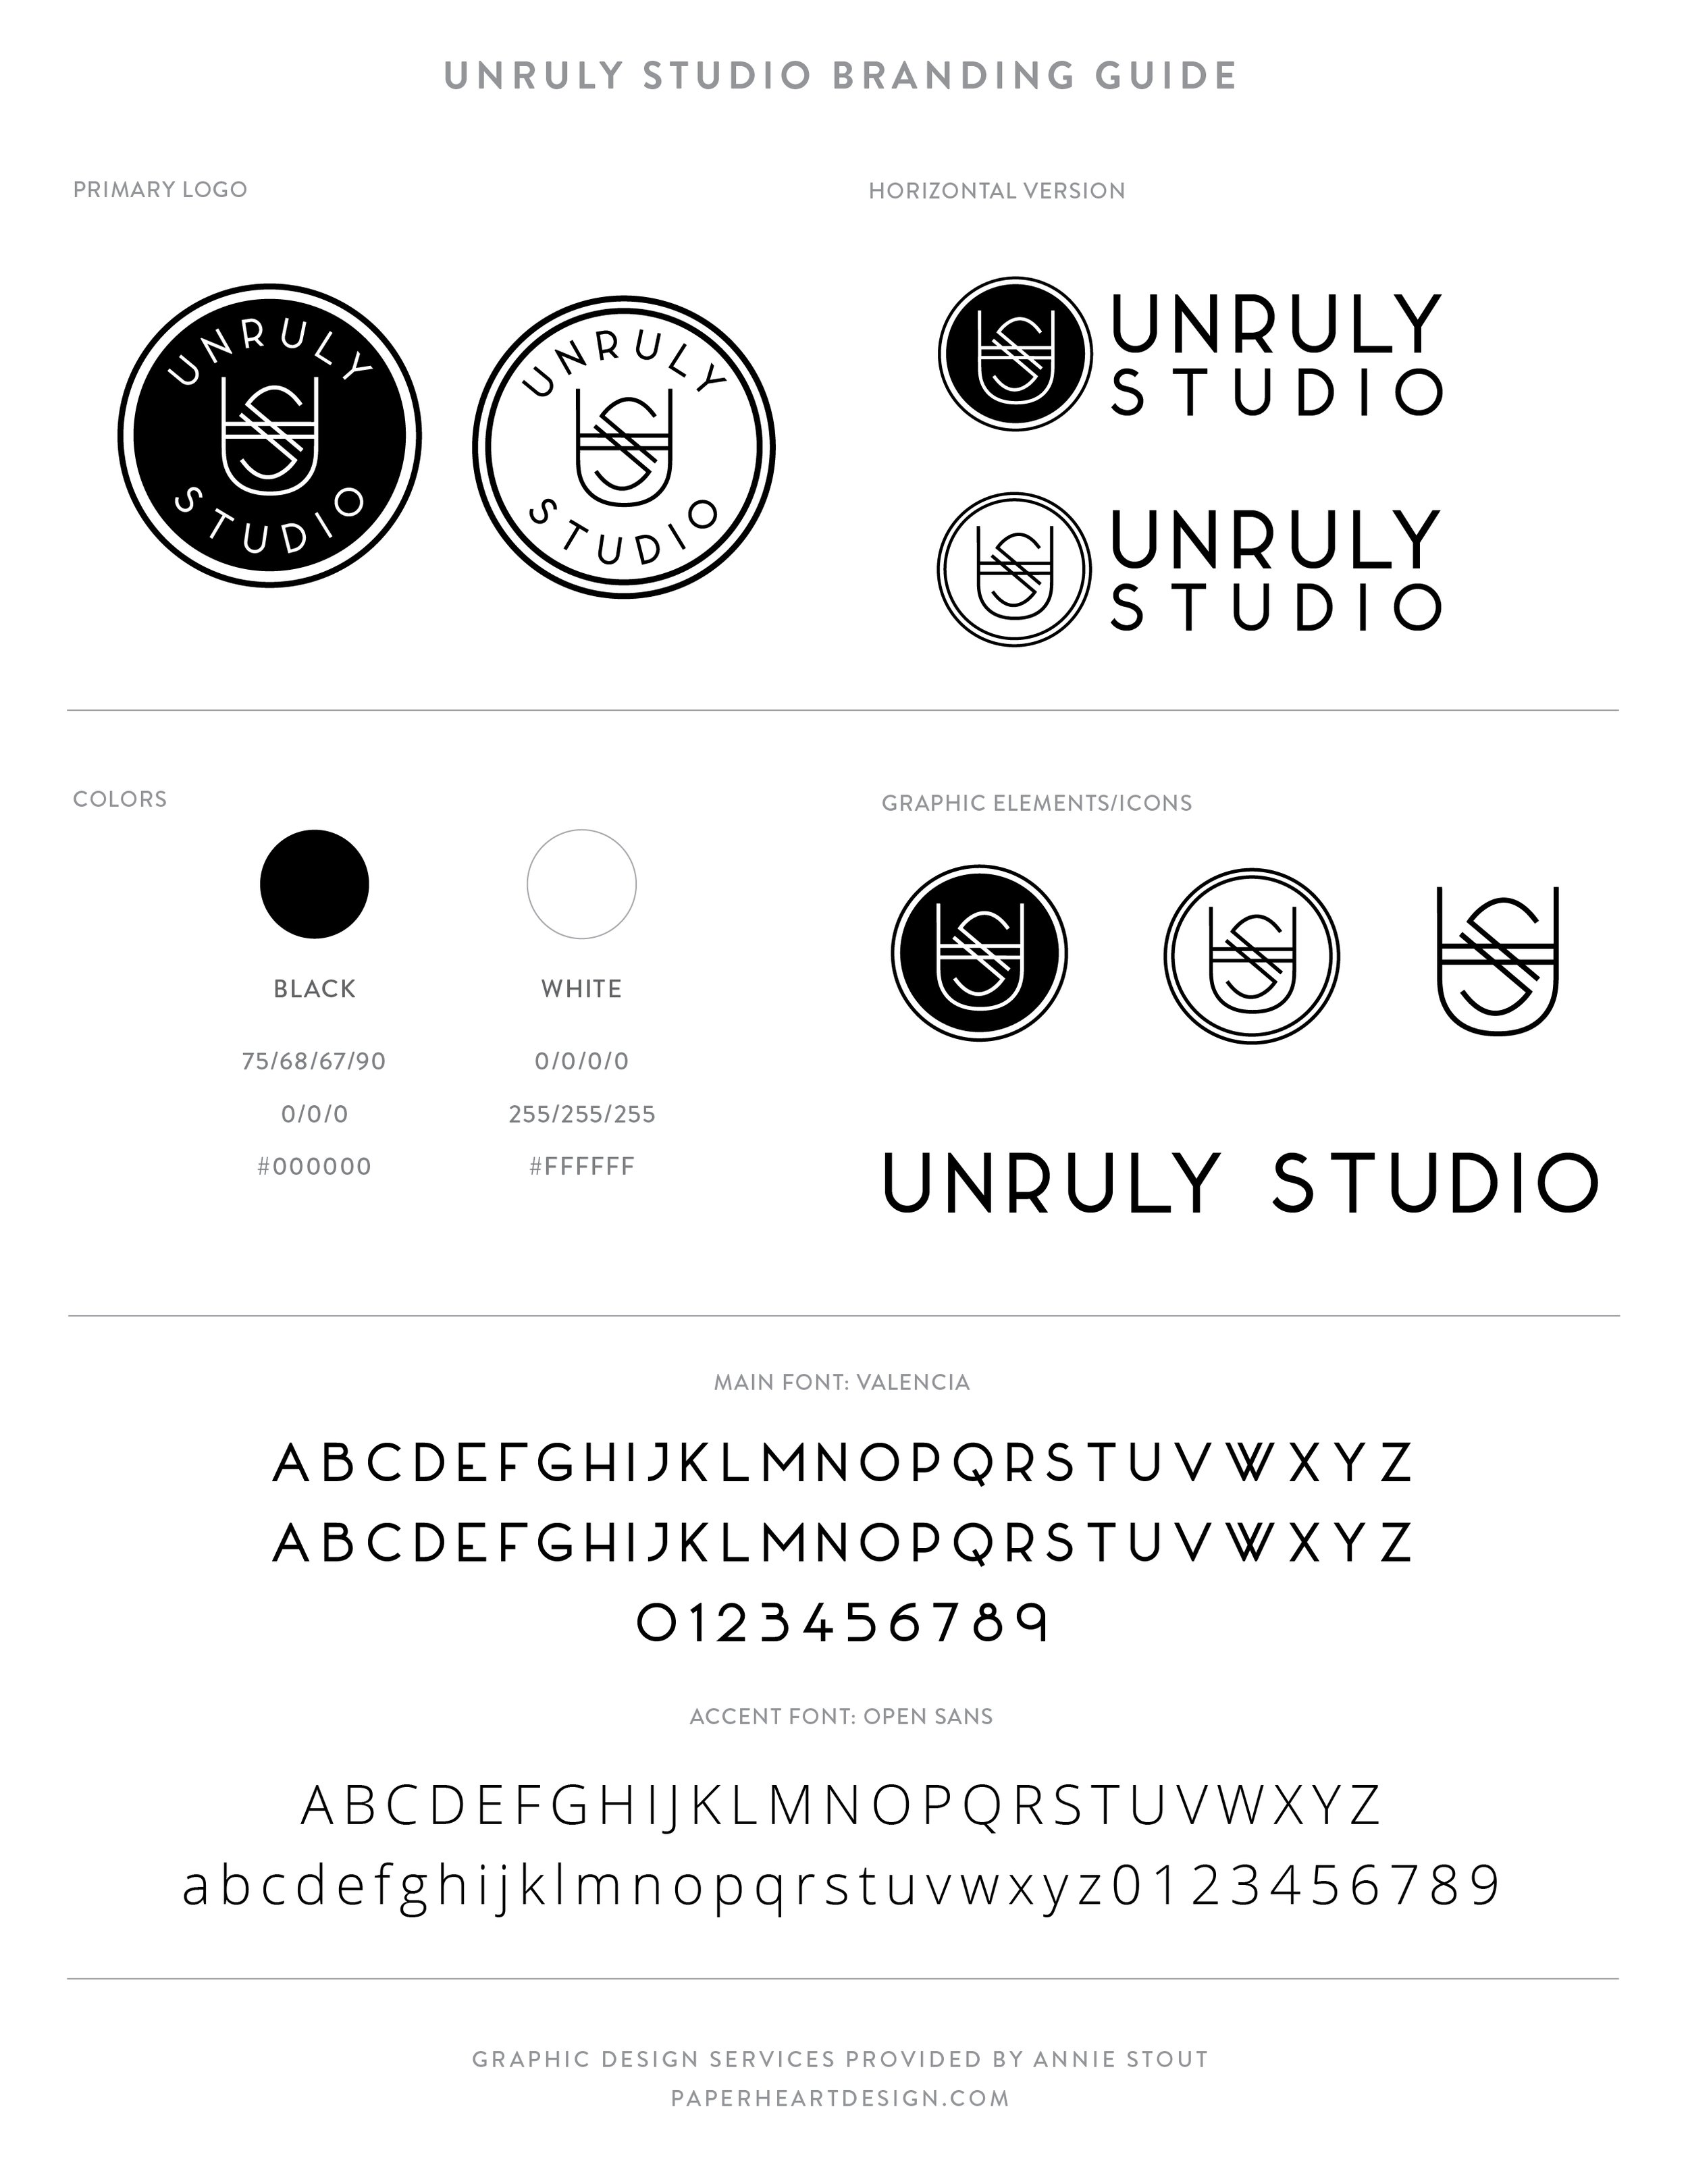 Branding Guide - Unruly Studio-01.jpg